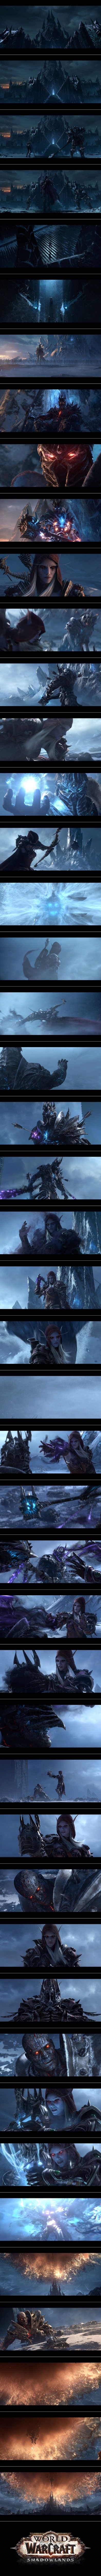 블리즈컨 2019, 와우(World of Warcraft) 확장팩 어둠땅 공개